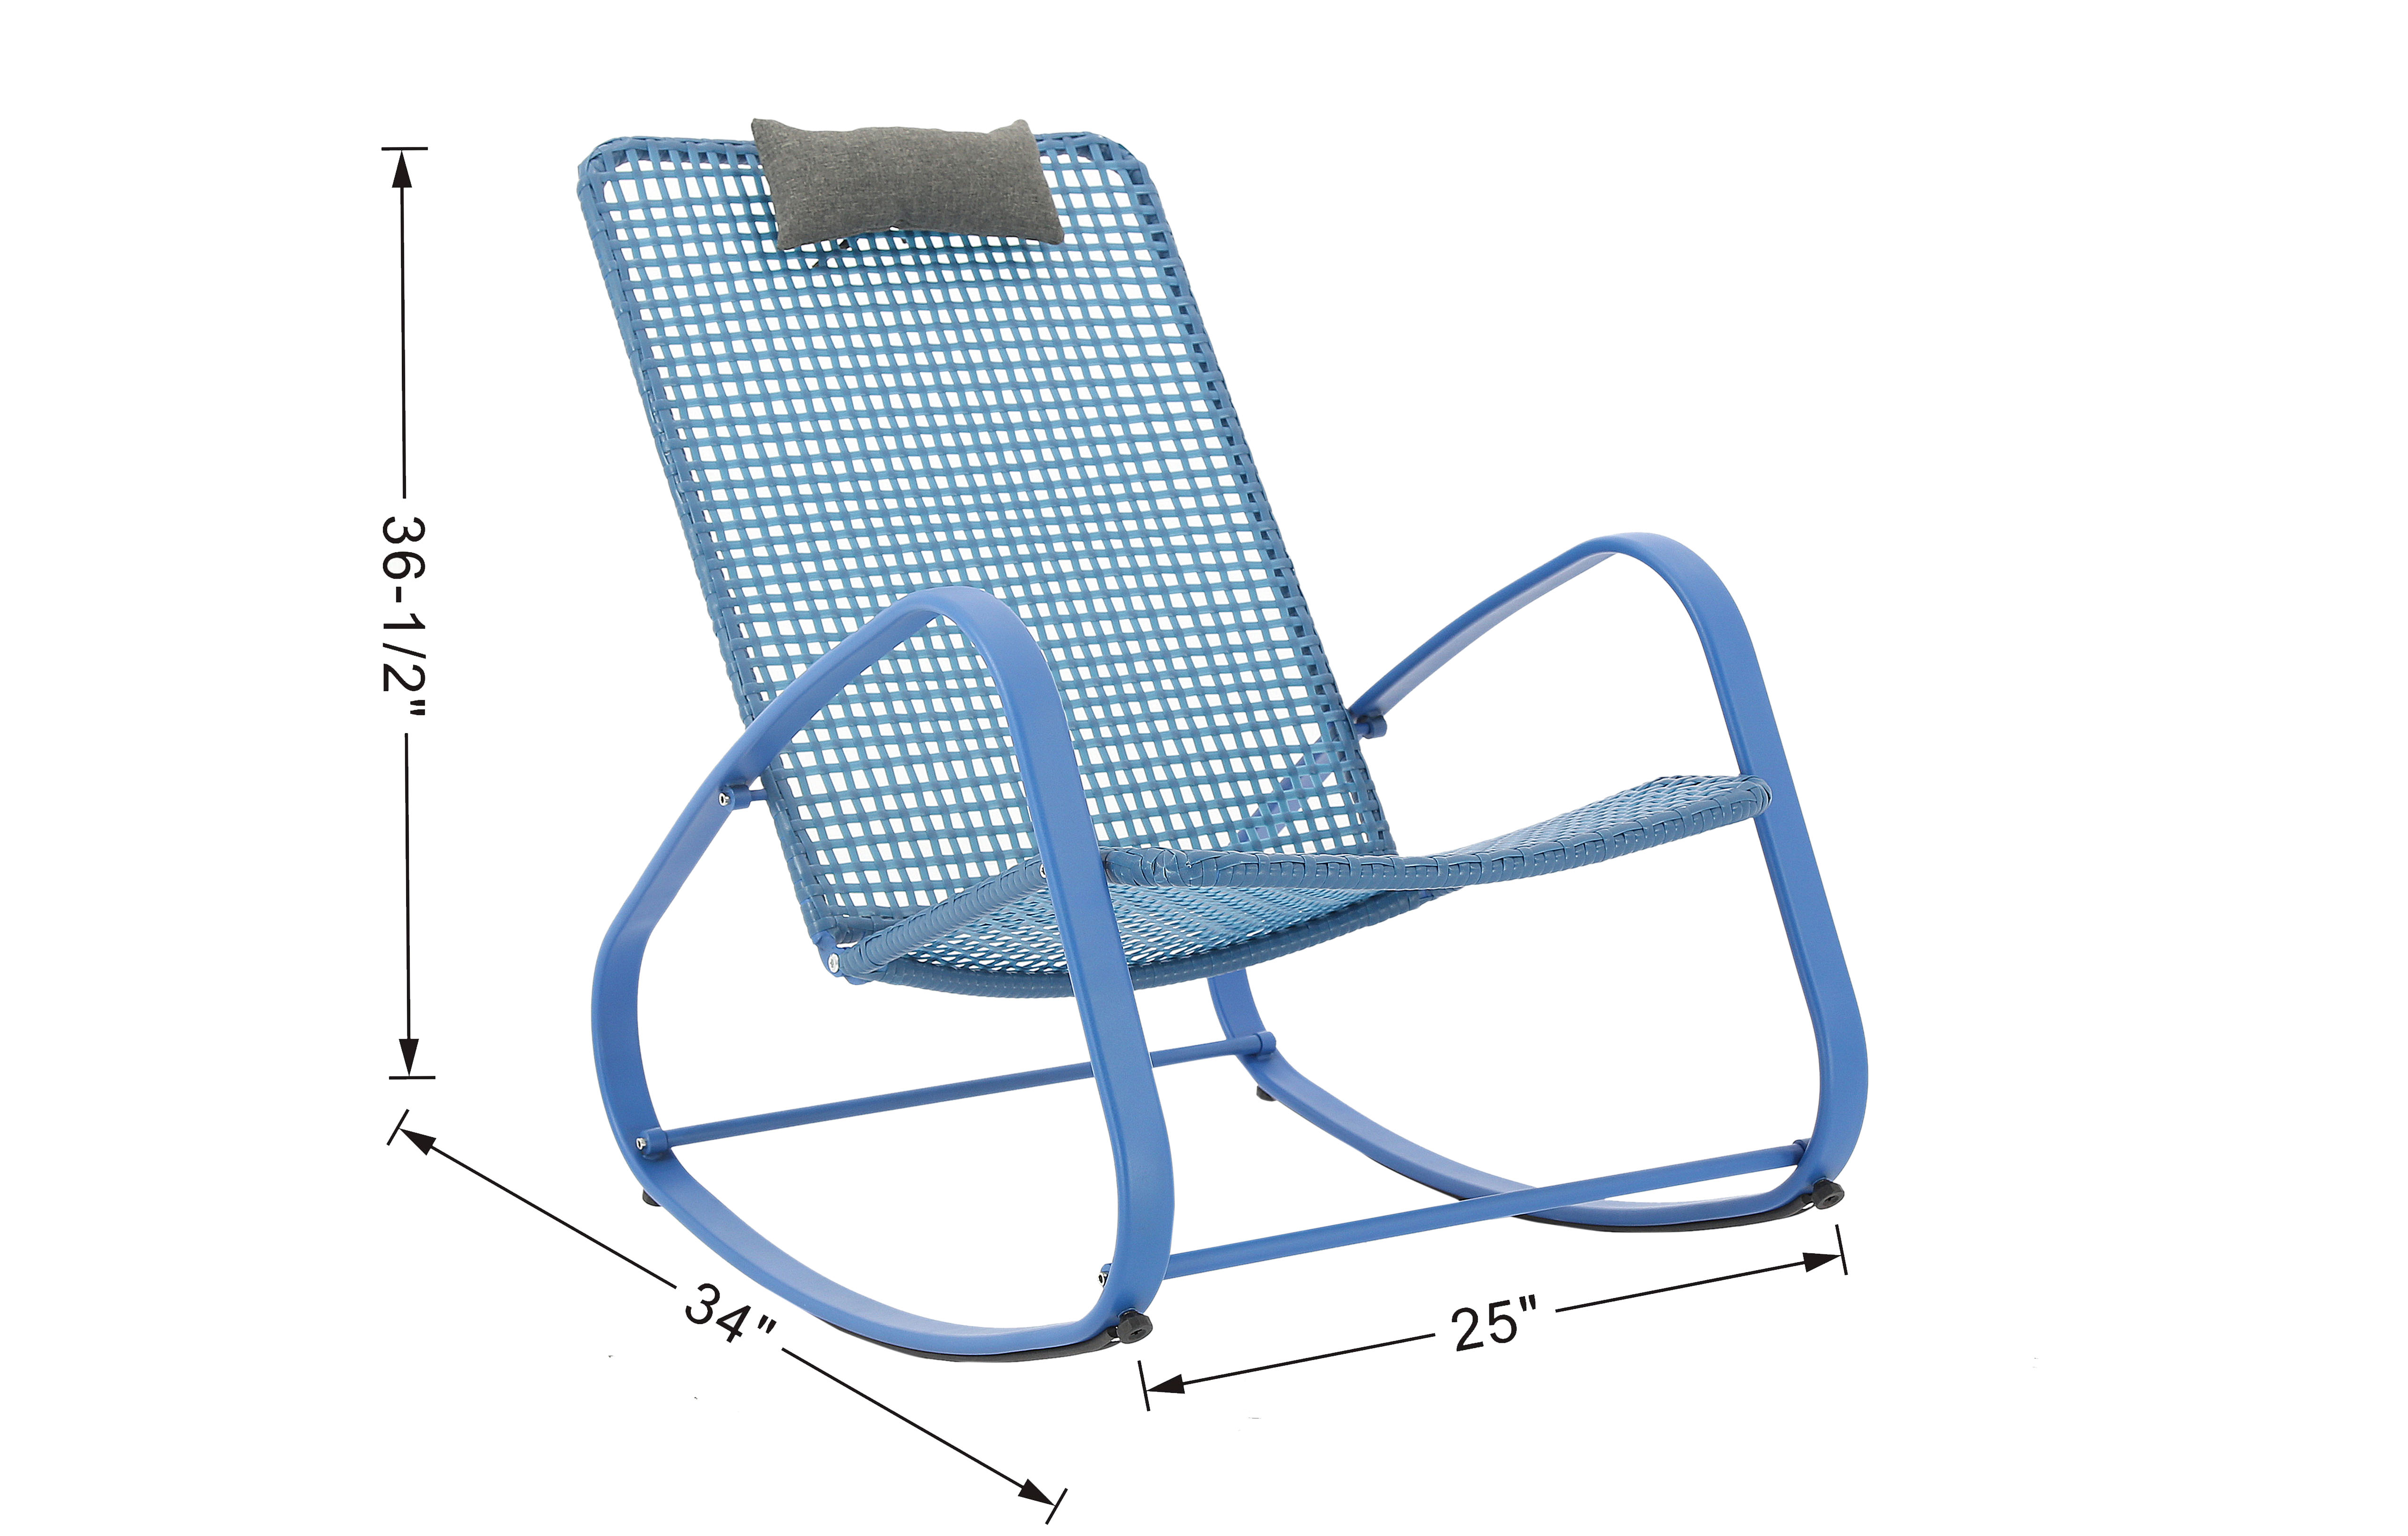 Baner Garden Indoor Outdoor Rocking Lounge Chair Porch Indoor Patio Headrest Furniture, Blue (X62BU) - image 3 of 8